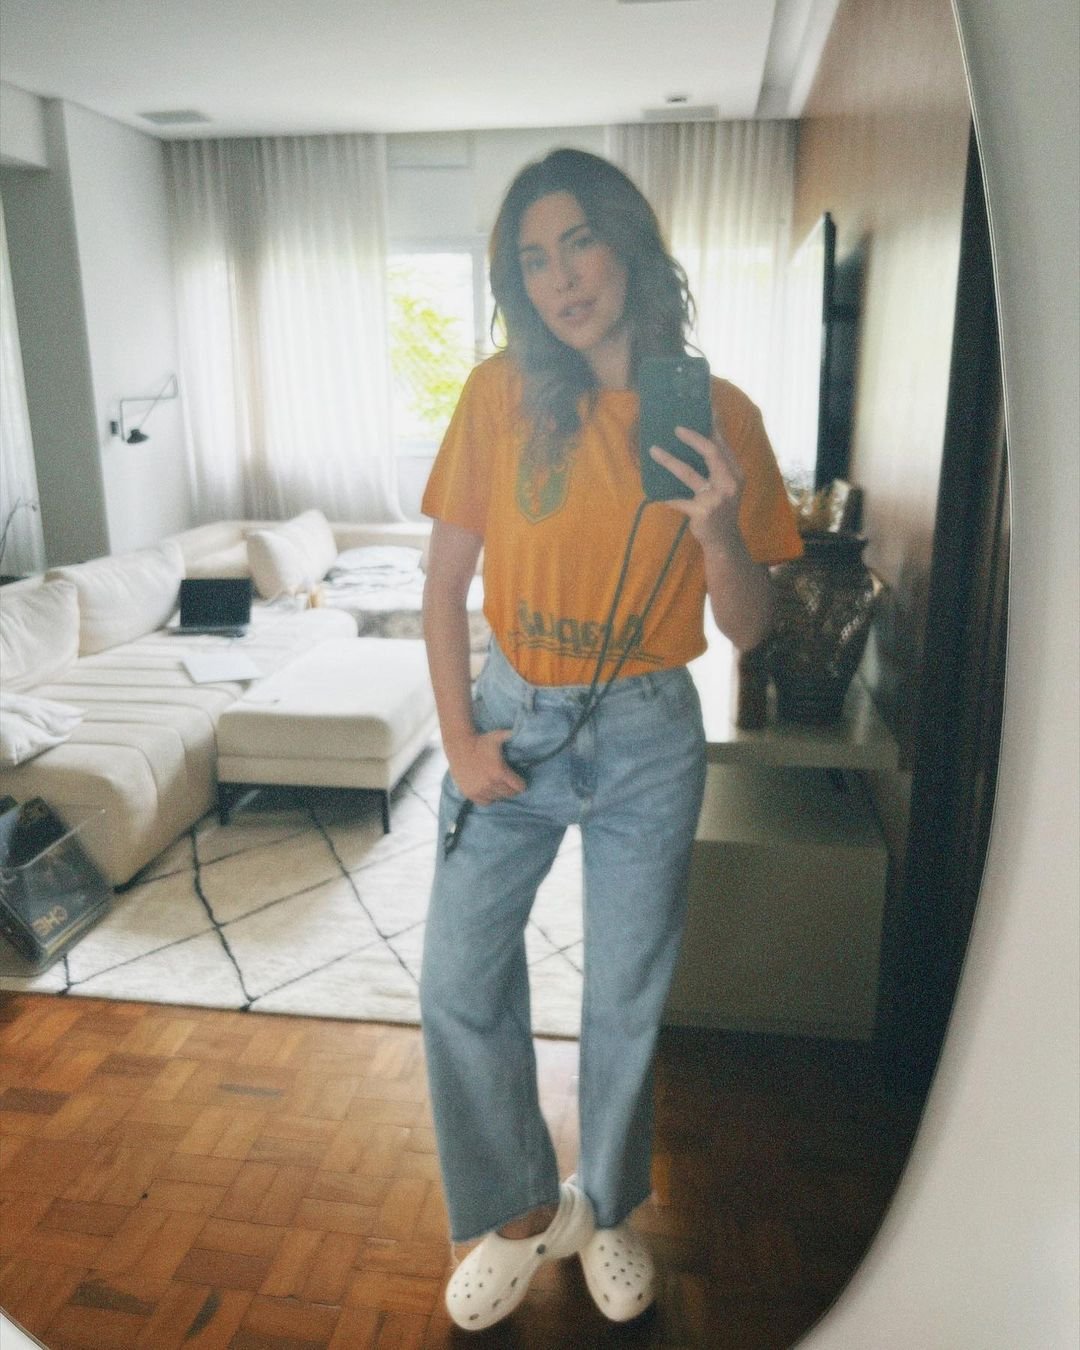 fe paes leme - camisa amarela calça jeans crocs branco - look do dia - verão - street style - https://stealthelook.com.br